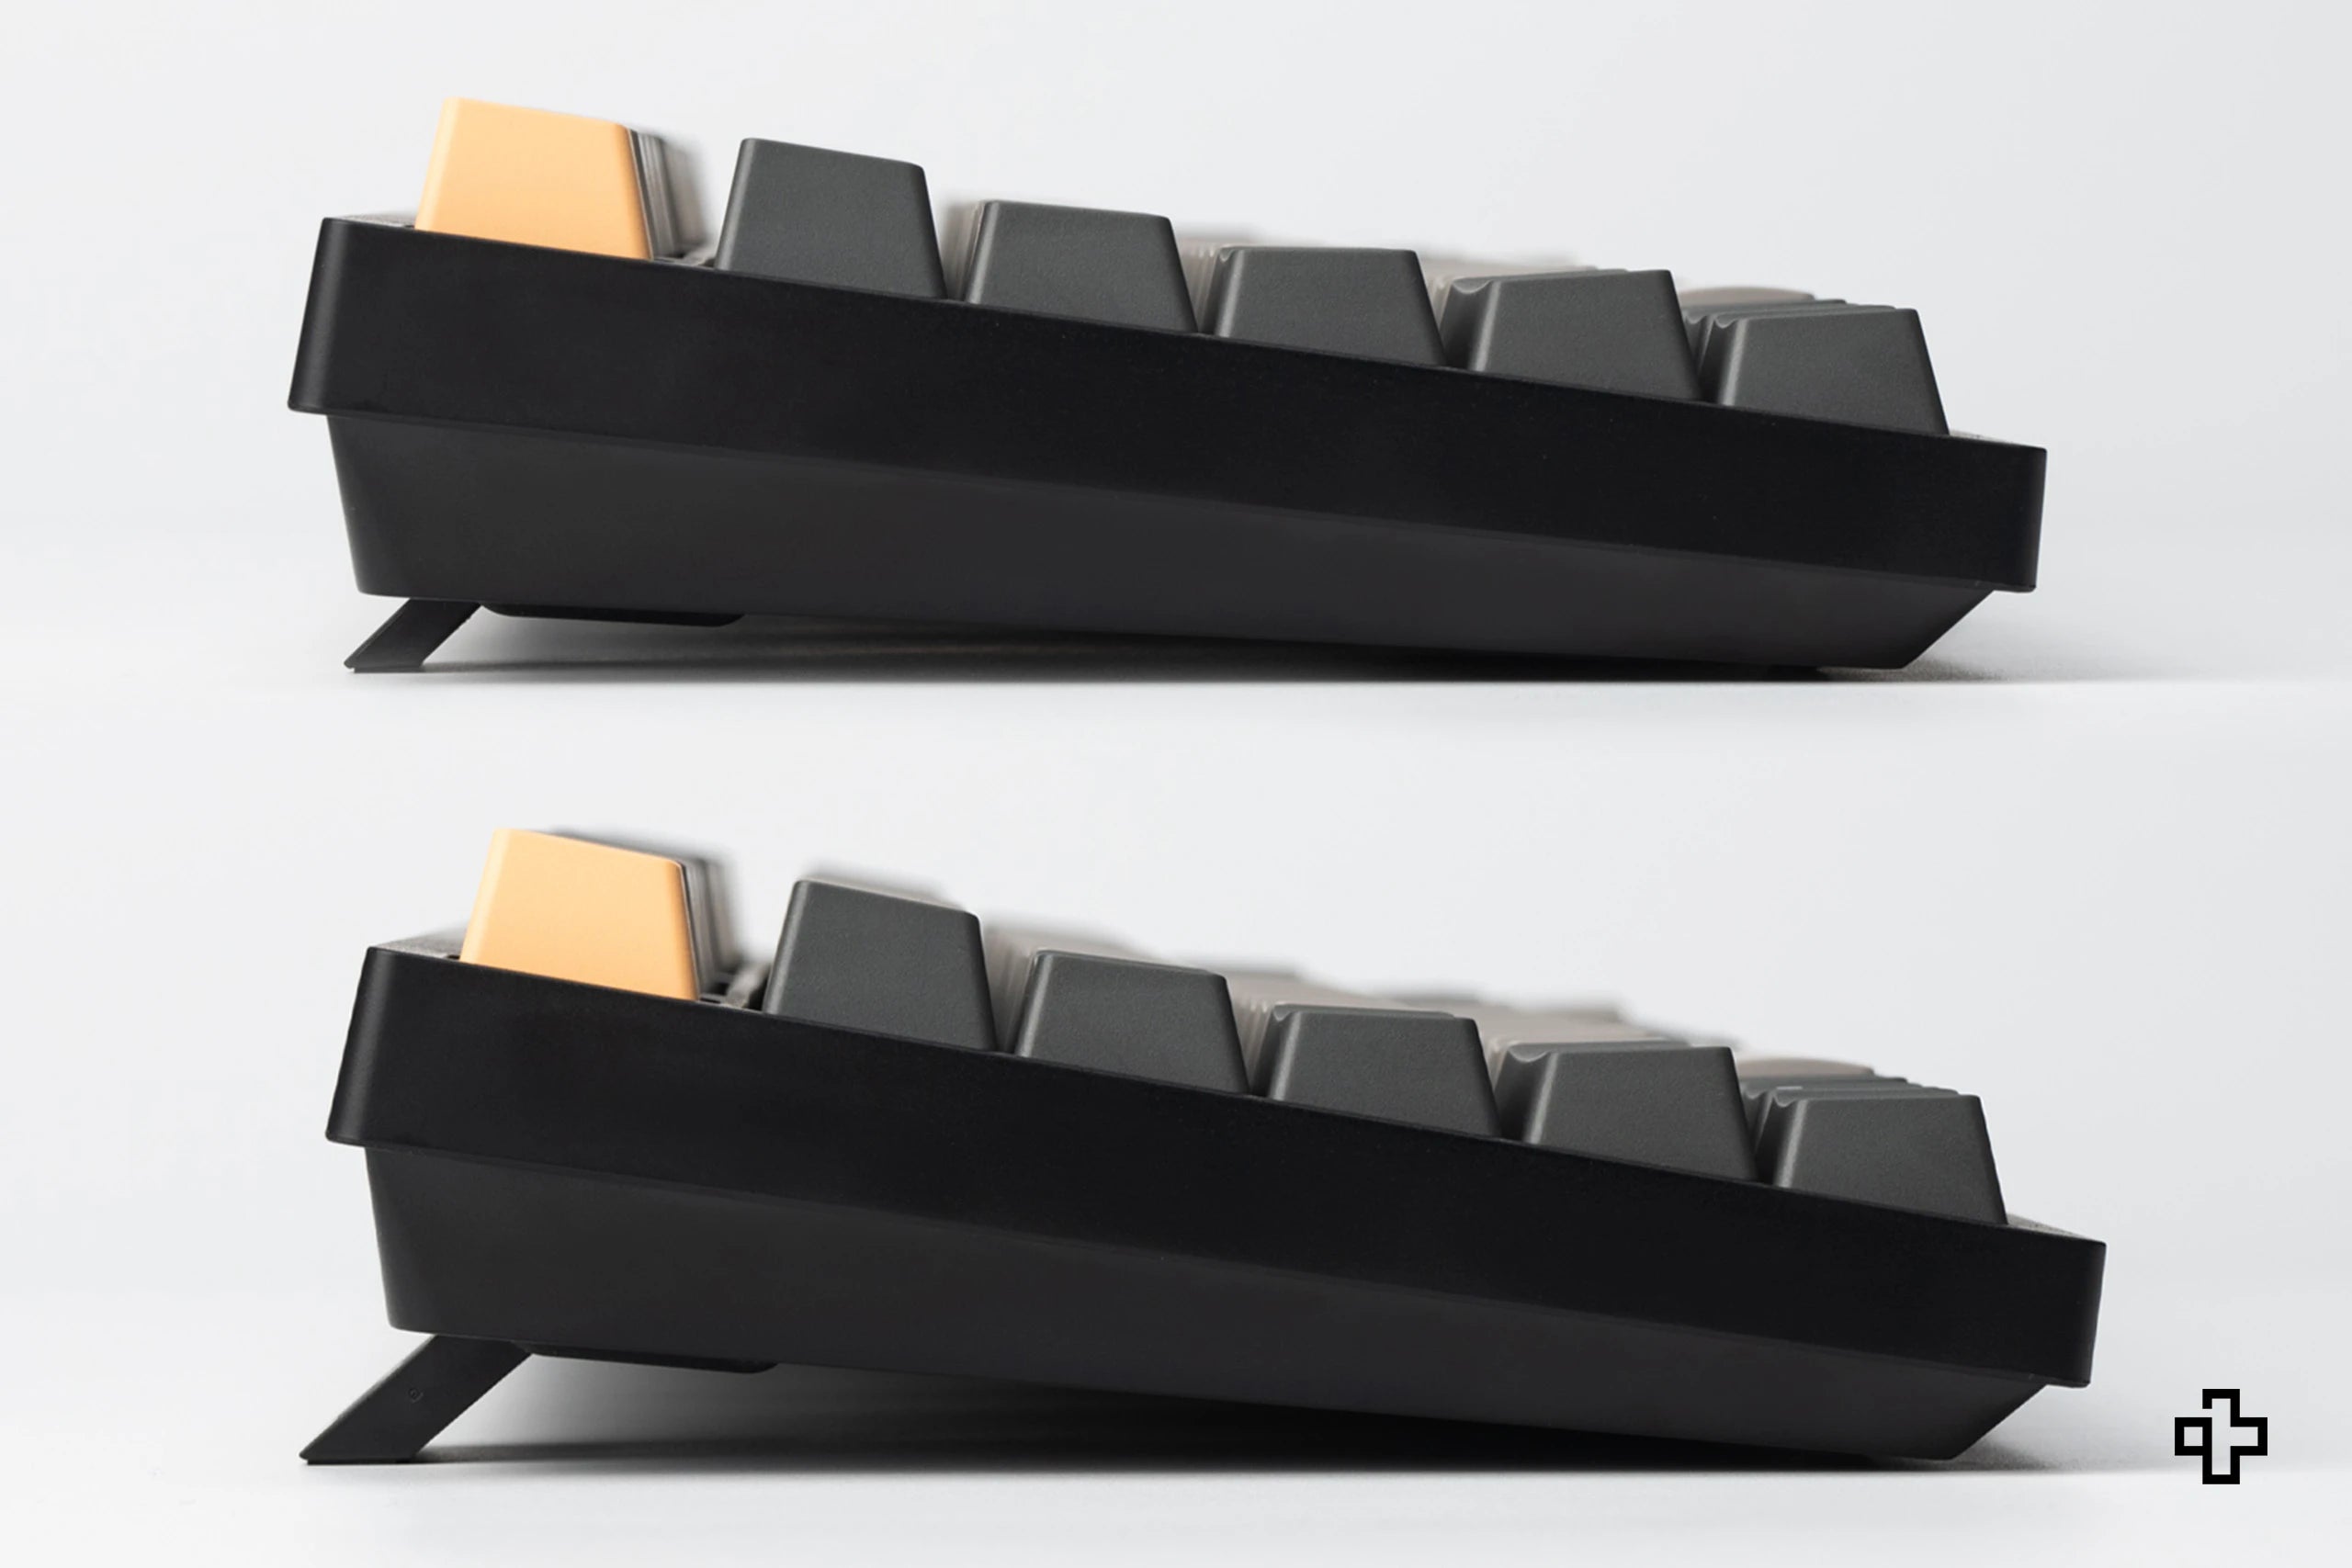 Keychron C2 Pro Hotswap RGB mechanische Tastatur